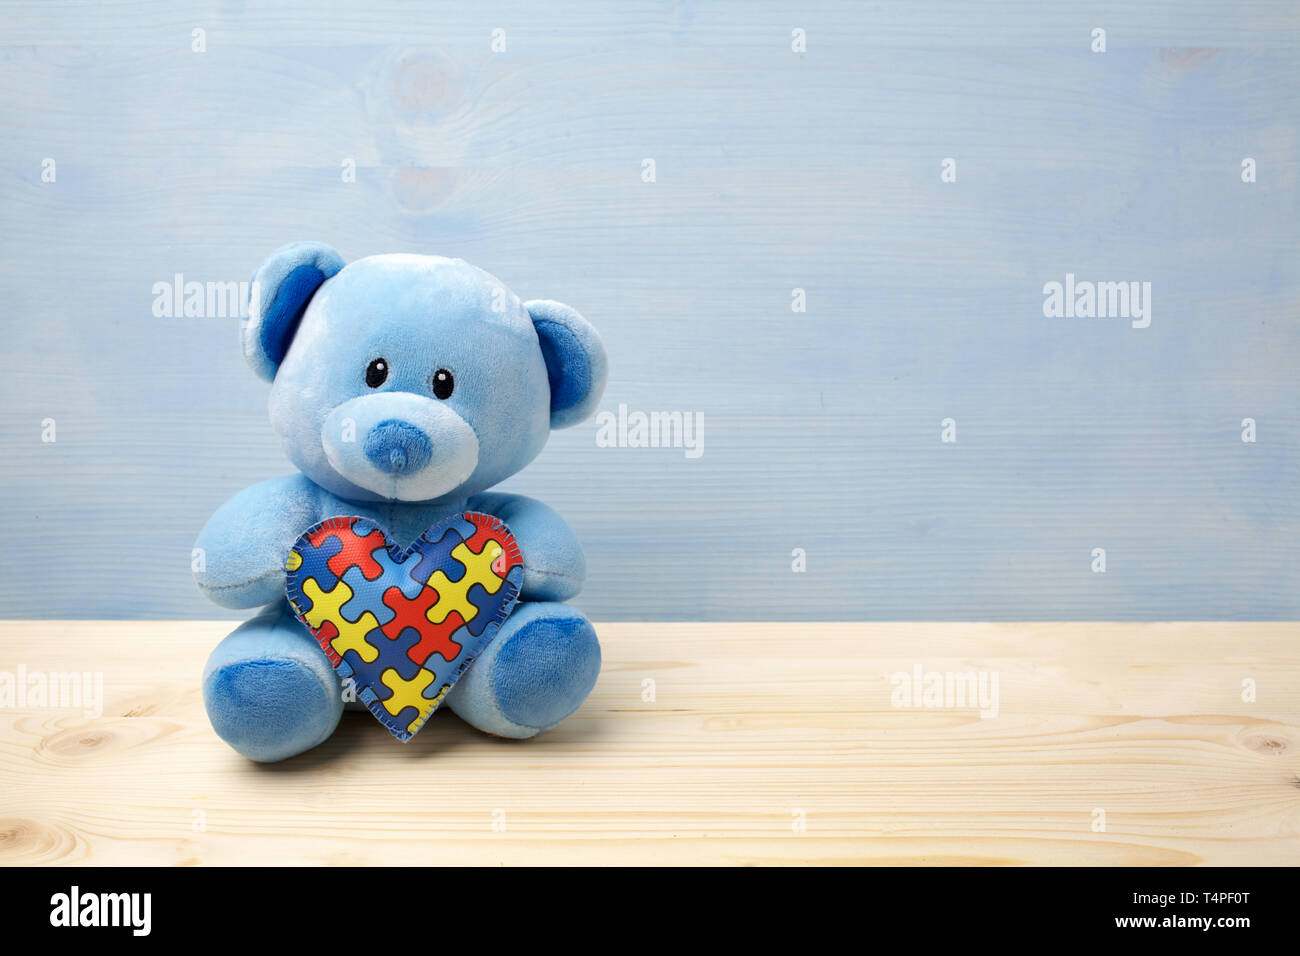 Welt Autismus Bewußtsein Tag, Konzept mit Teddybär holding Puzzle oder Stichsäge Muster auf Herz Stockfoto